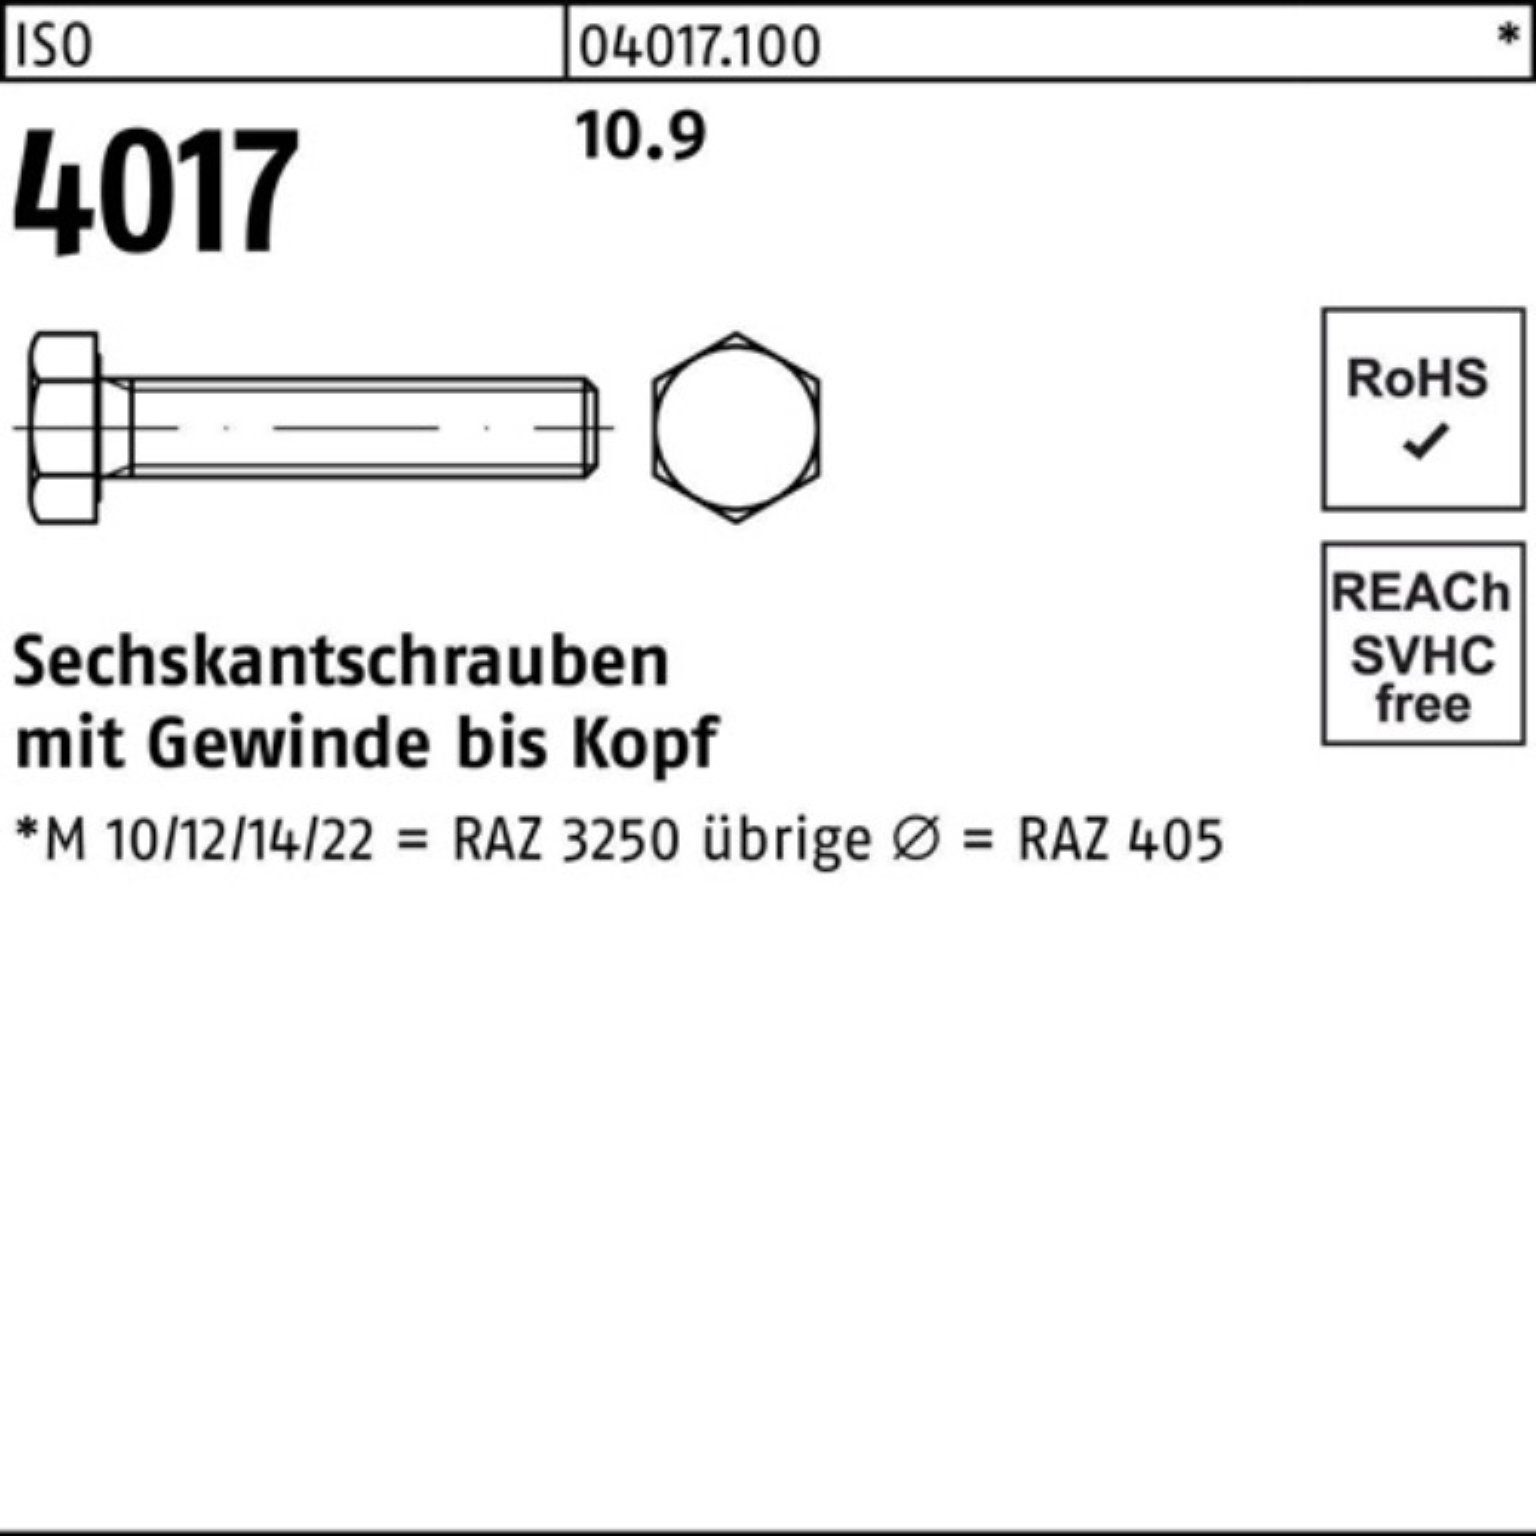 ISO Sechskantschraube M20x 40 Sechskantschraube Bufab 10.9 100er ISO 240 Stück 4017 1 Pack VG